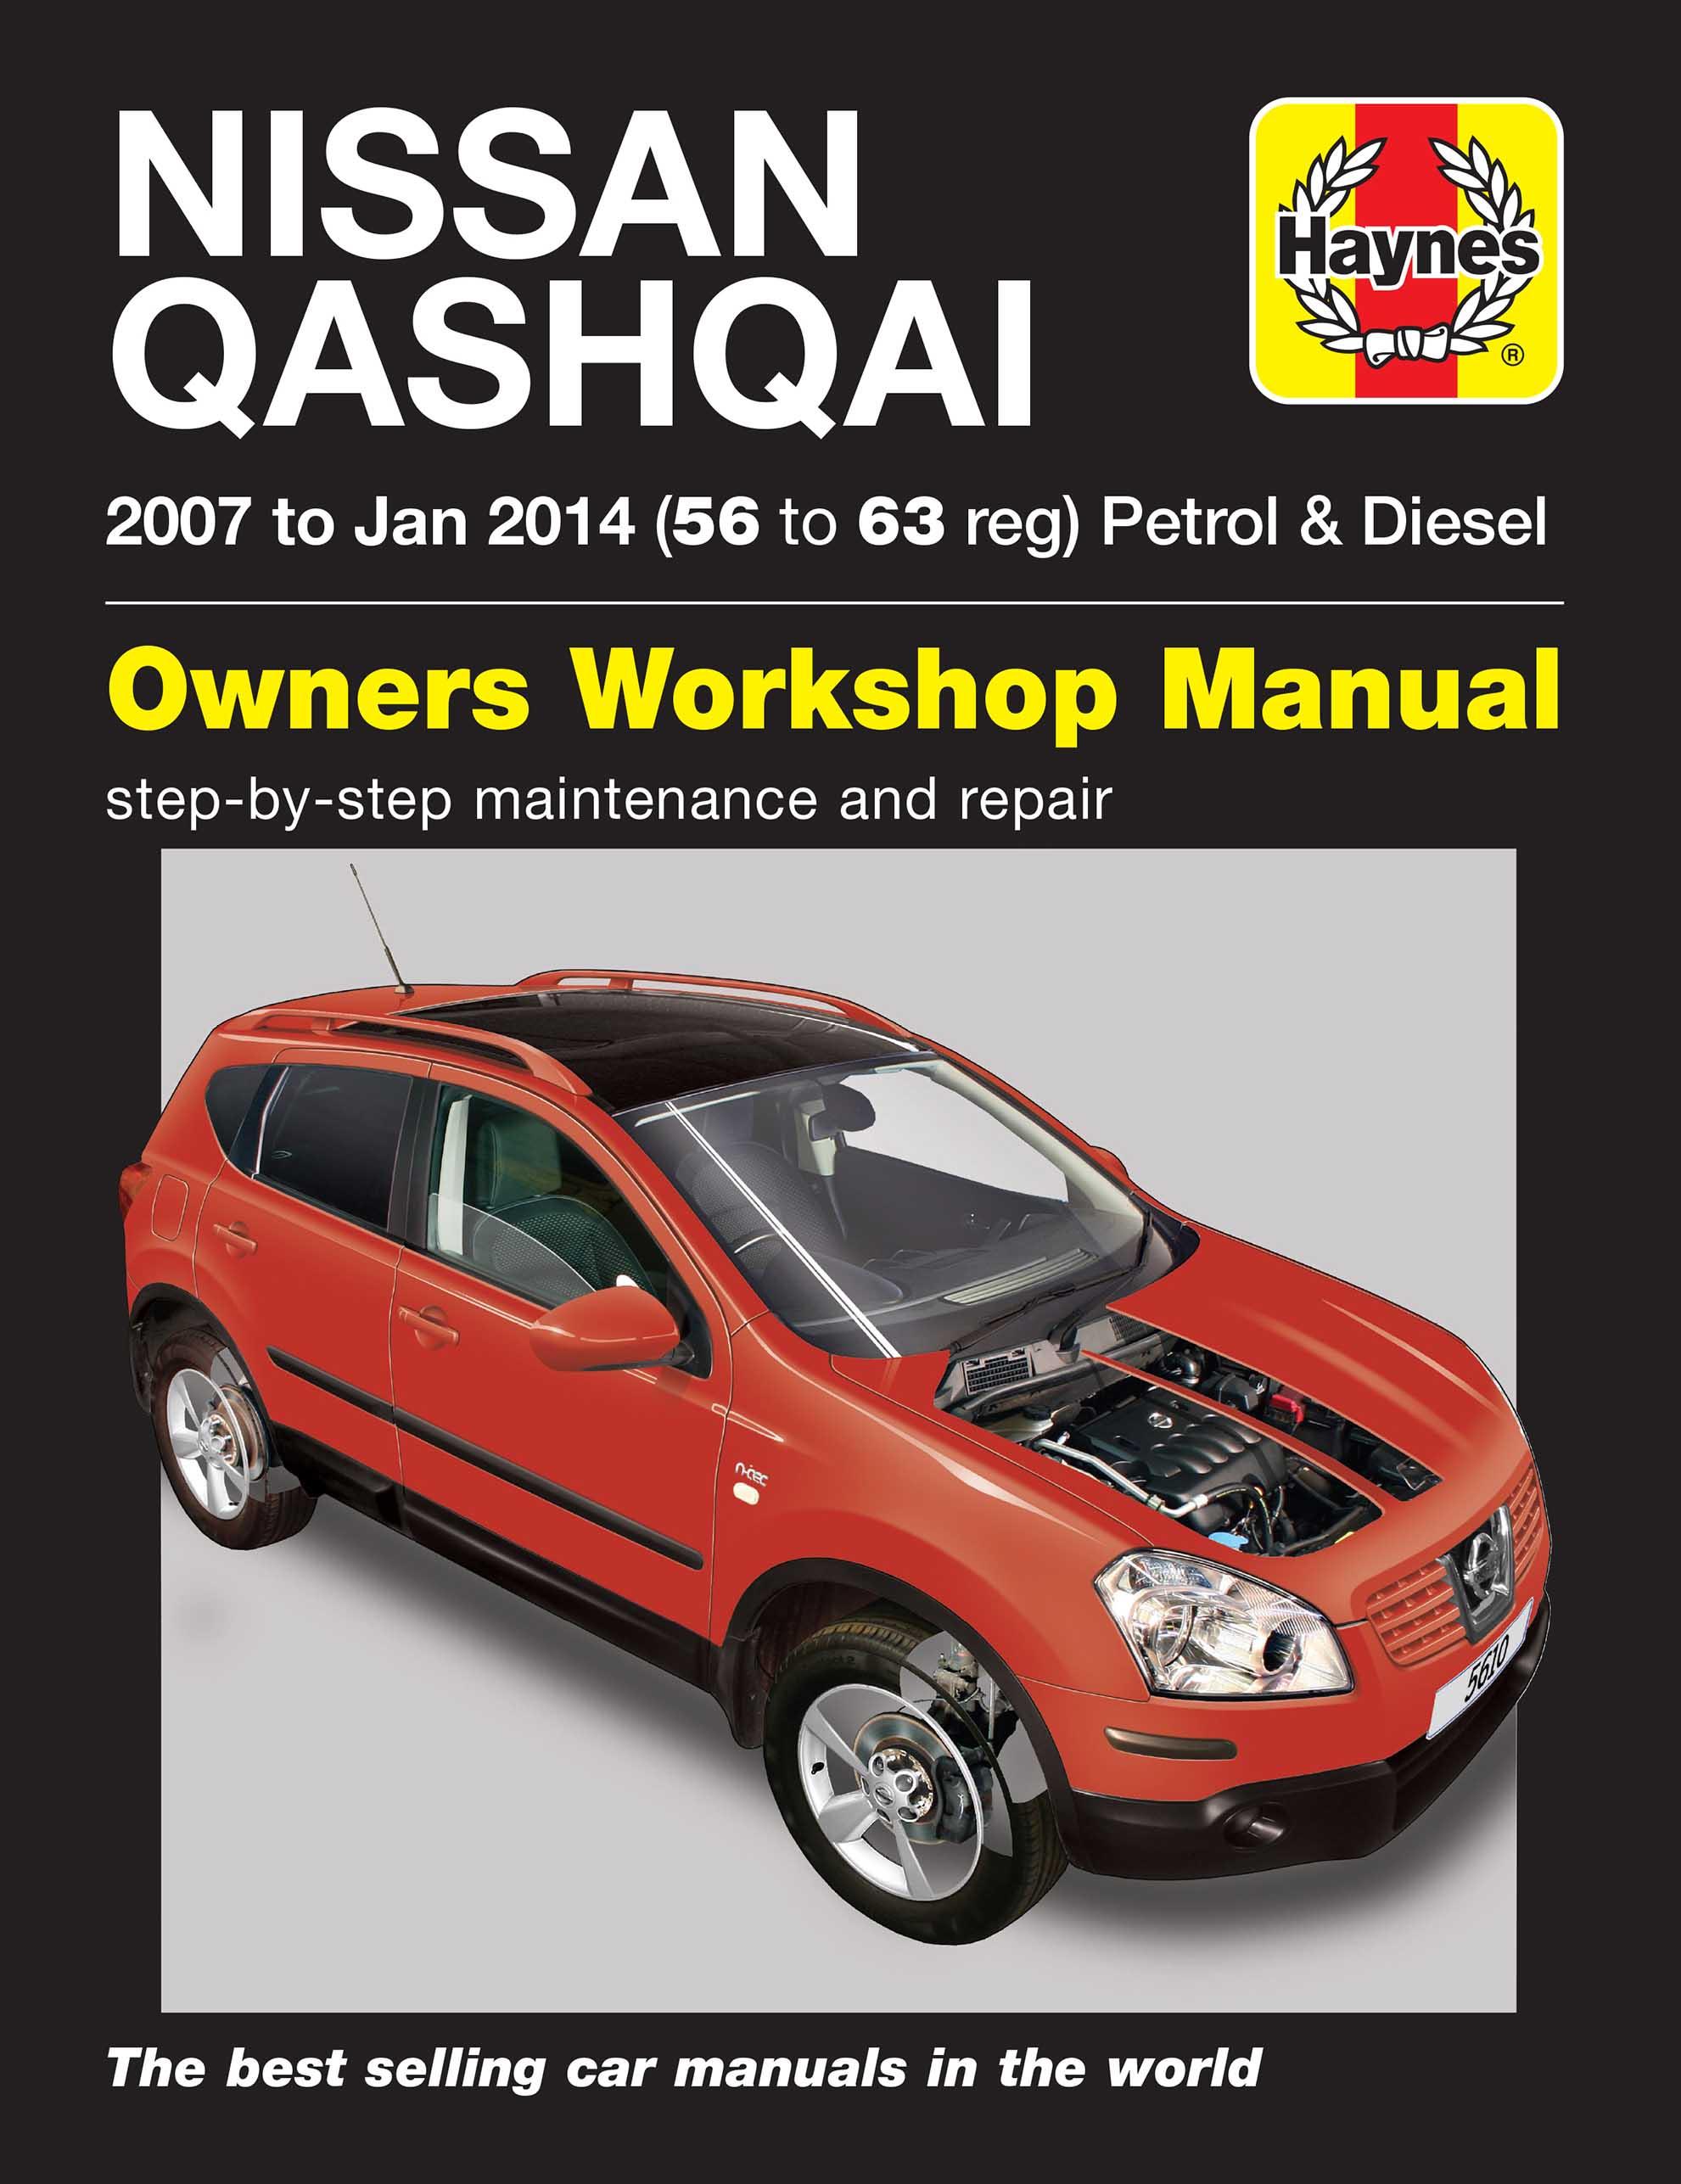 Haynes Nissan Qashqai Petrol & Diesel Manual (07 To 12) 56 To 62